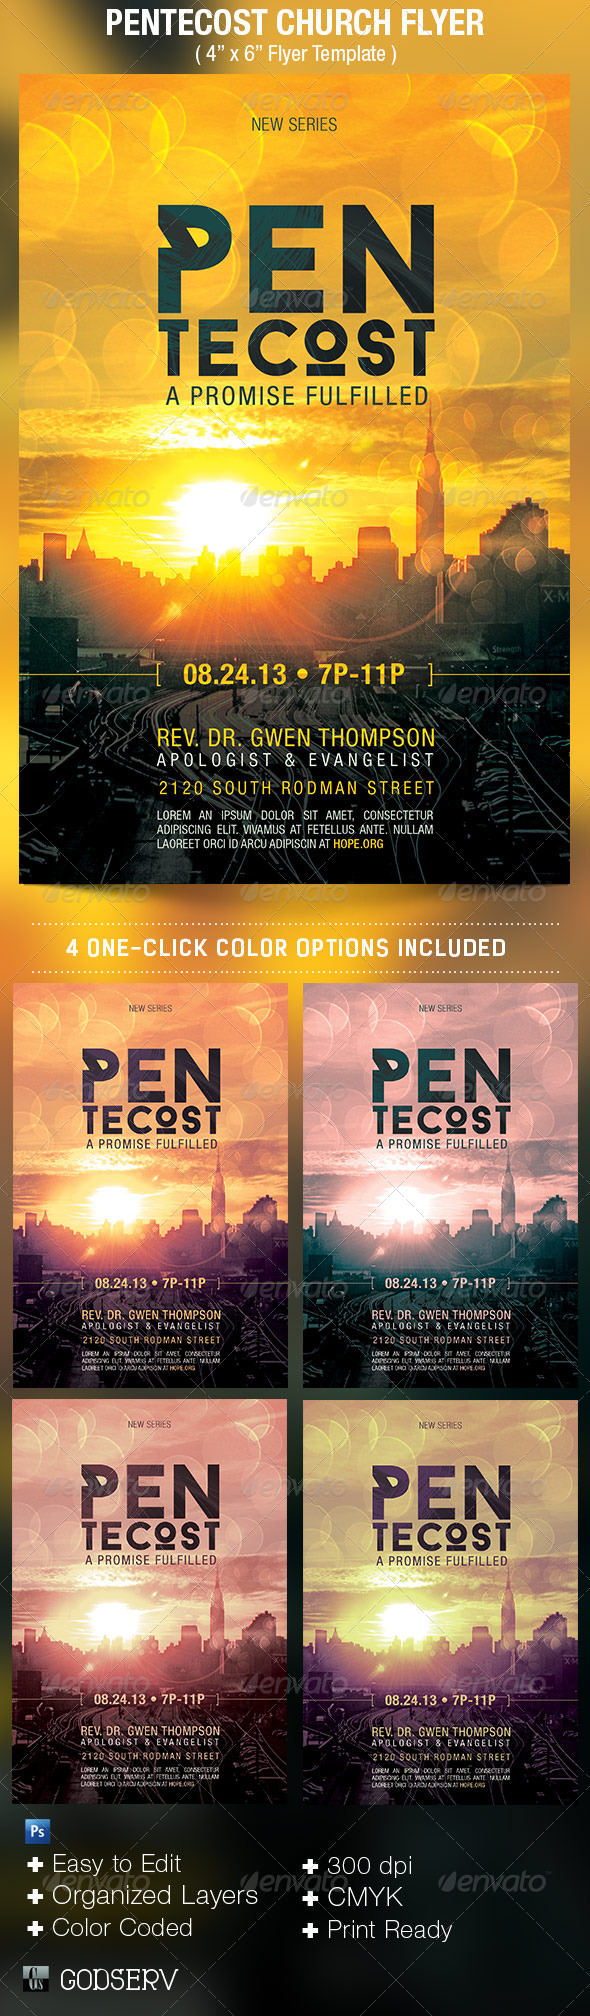 Pentecost-Church-Flyer-Template-Preview